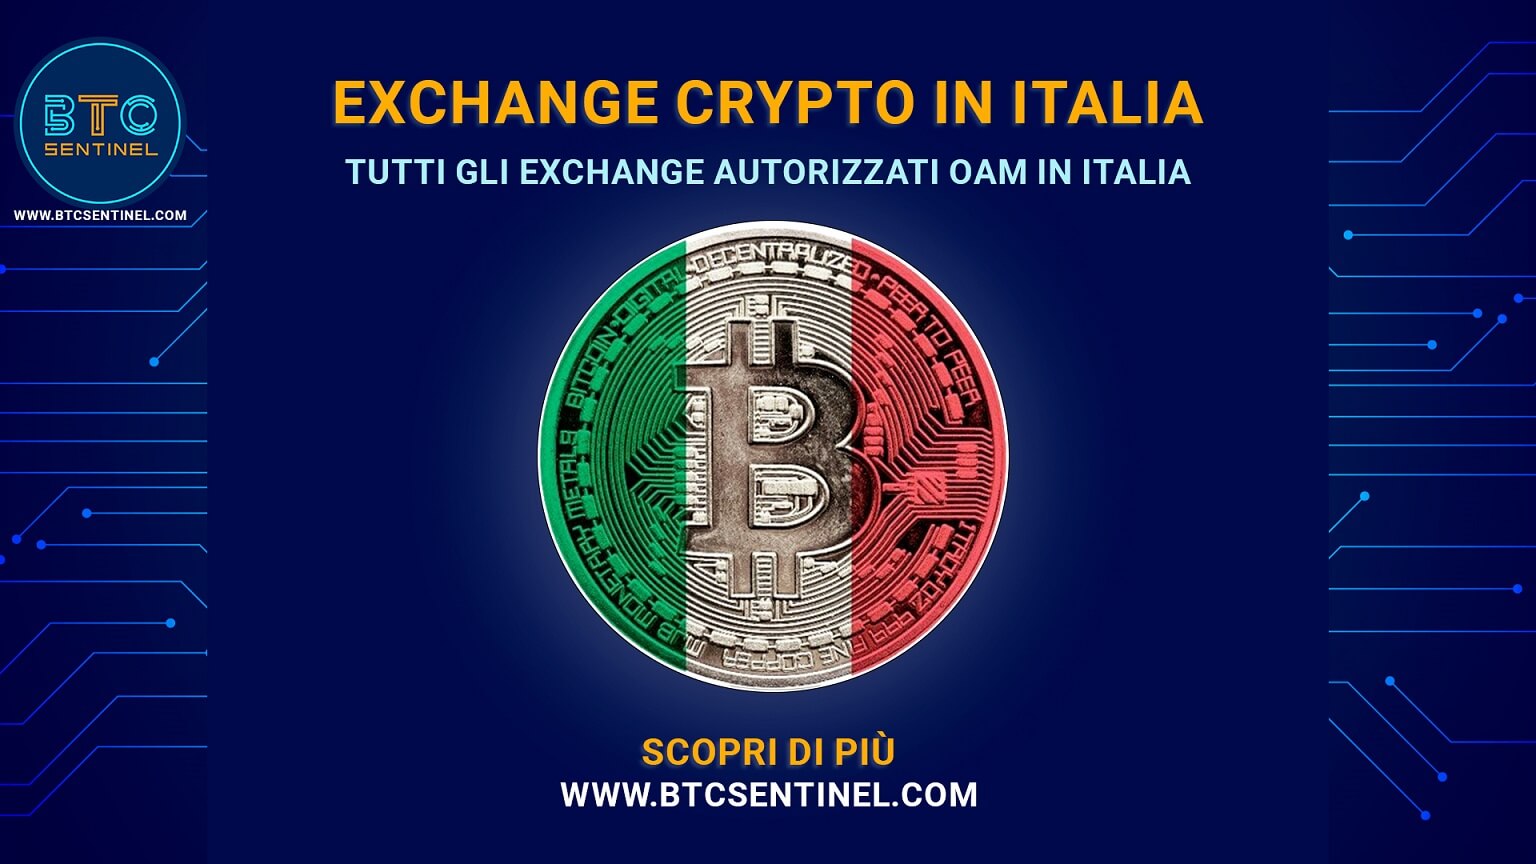 Gli exchange crypto autorizzati da OAM ad operare in Italia